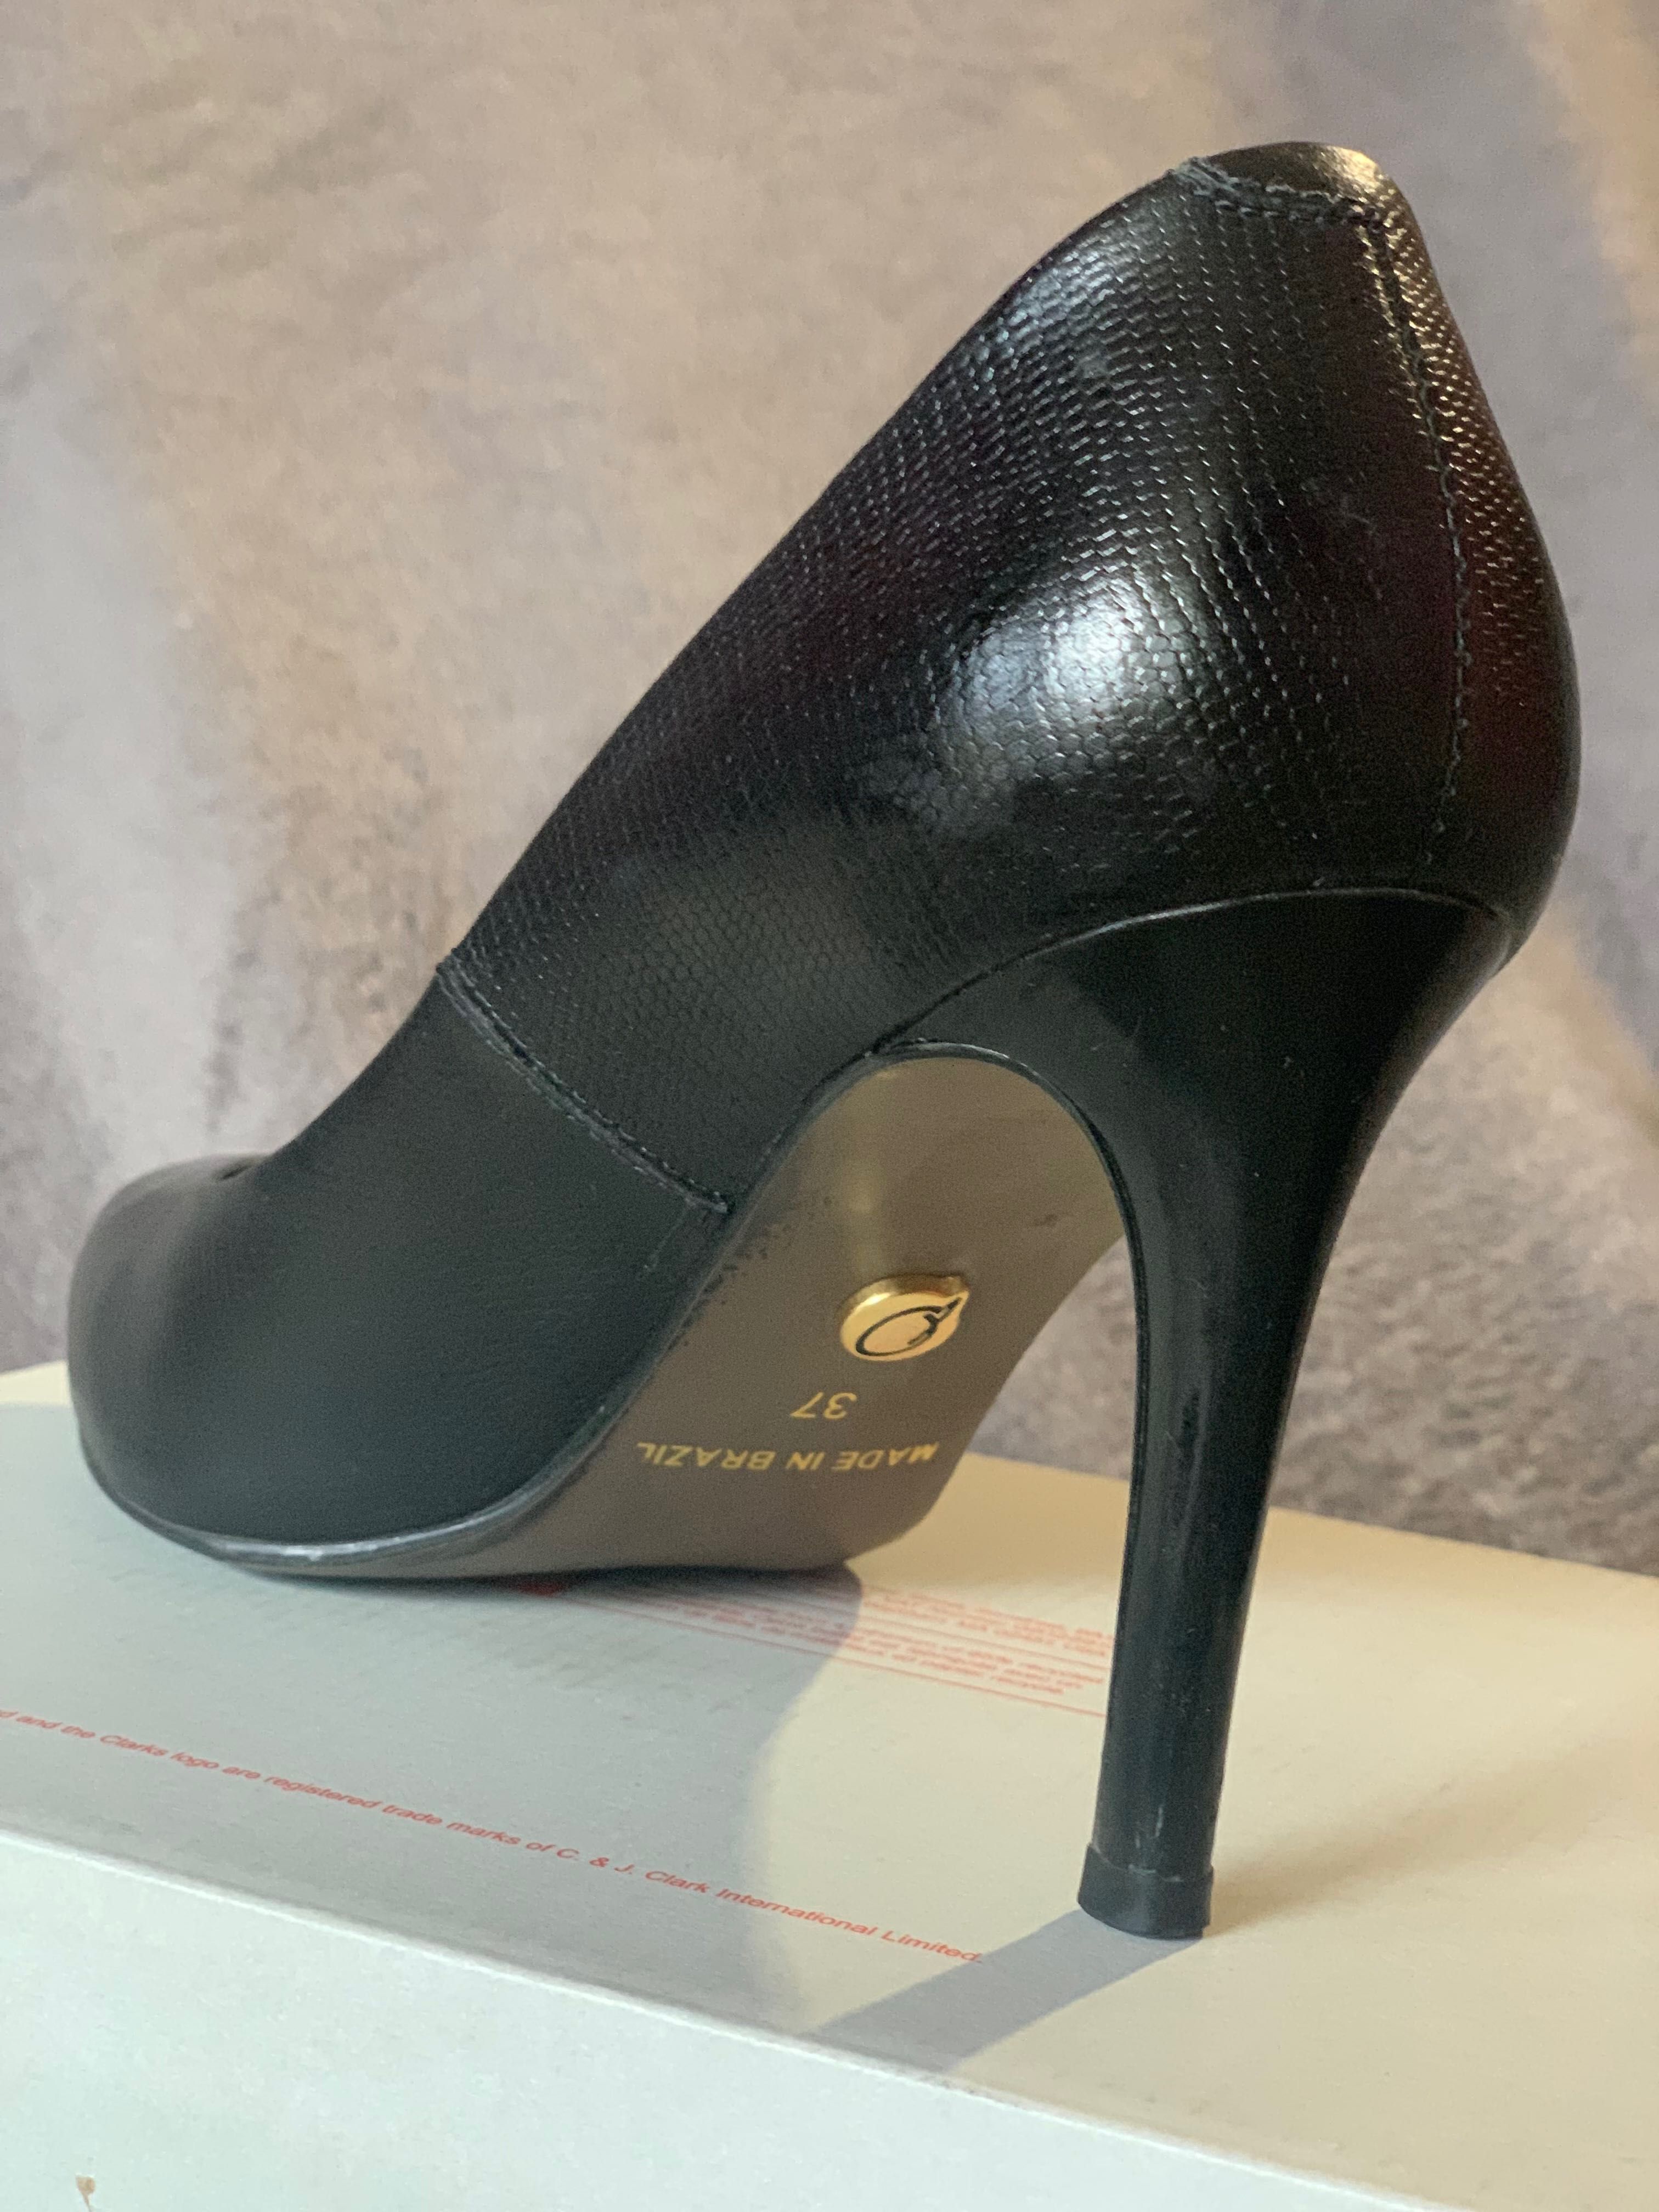 Черни елегантни обувки естествена кожа